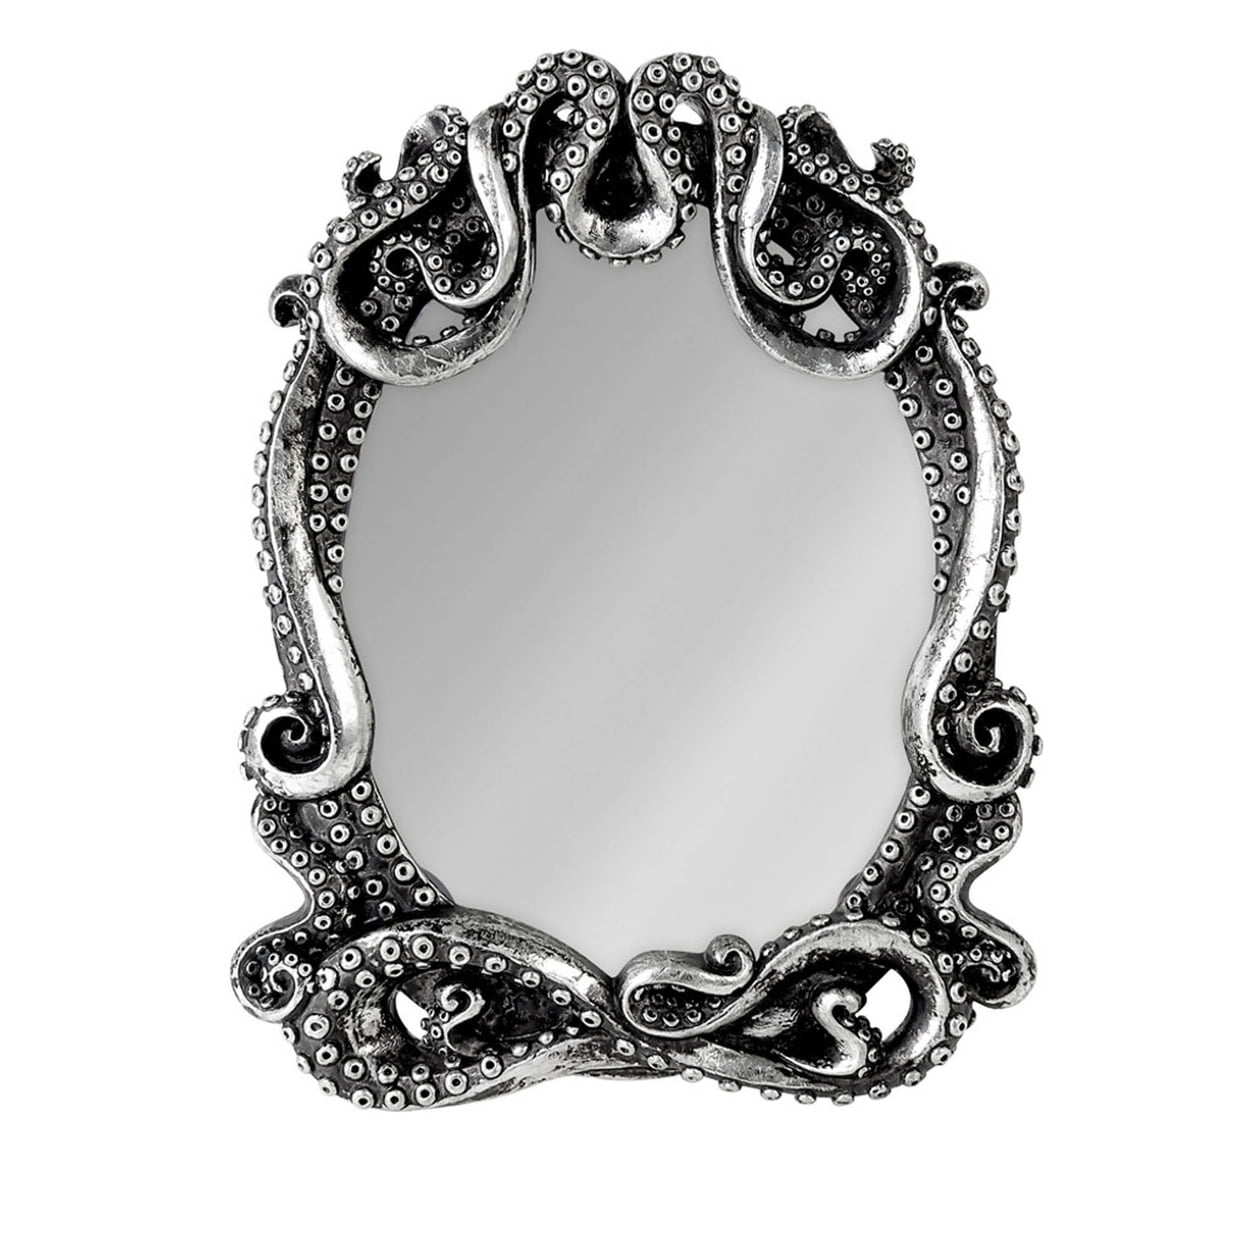 V77 Kraken Wall Compact Mirror - Antique Silver, Poly Resin